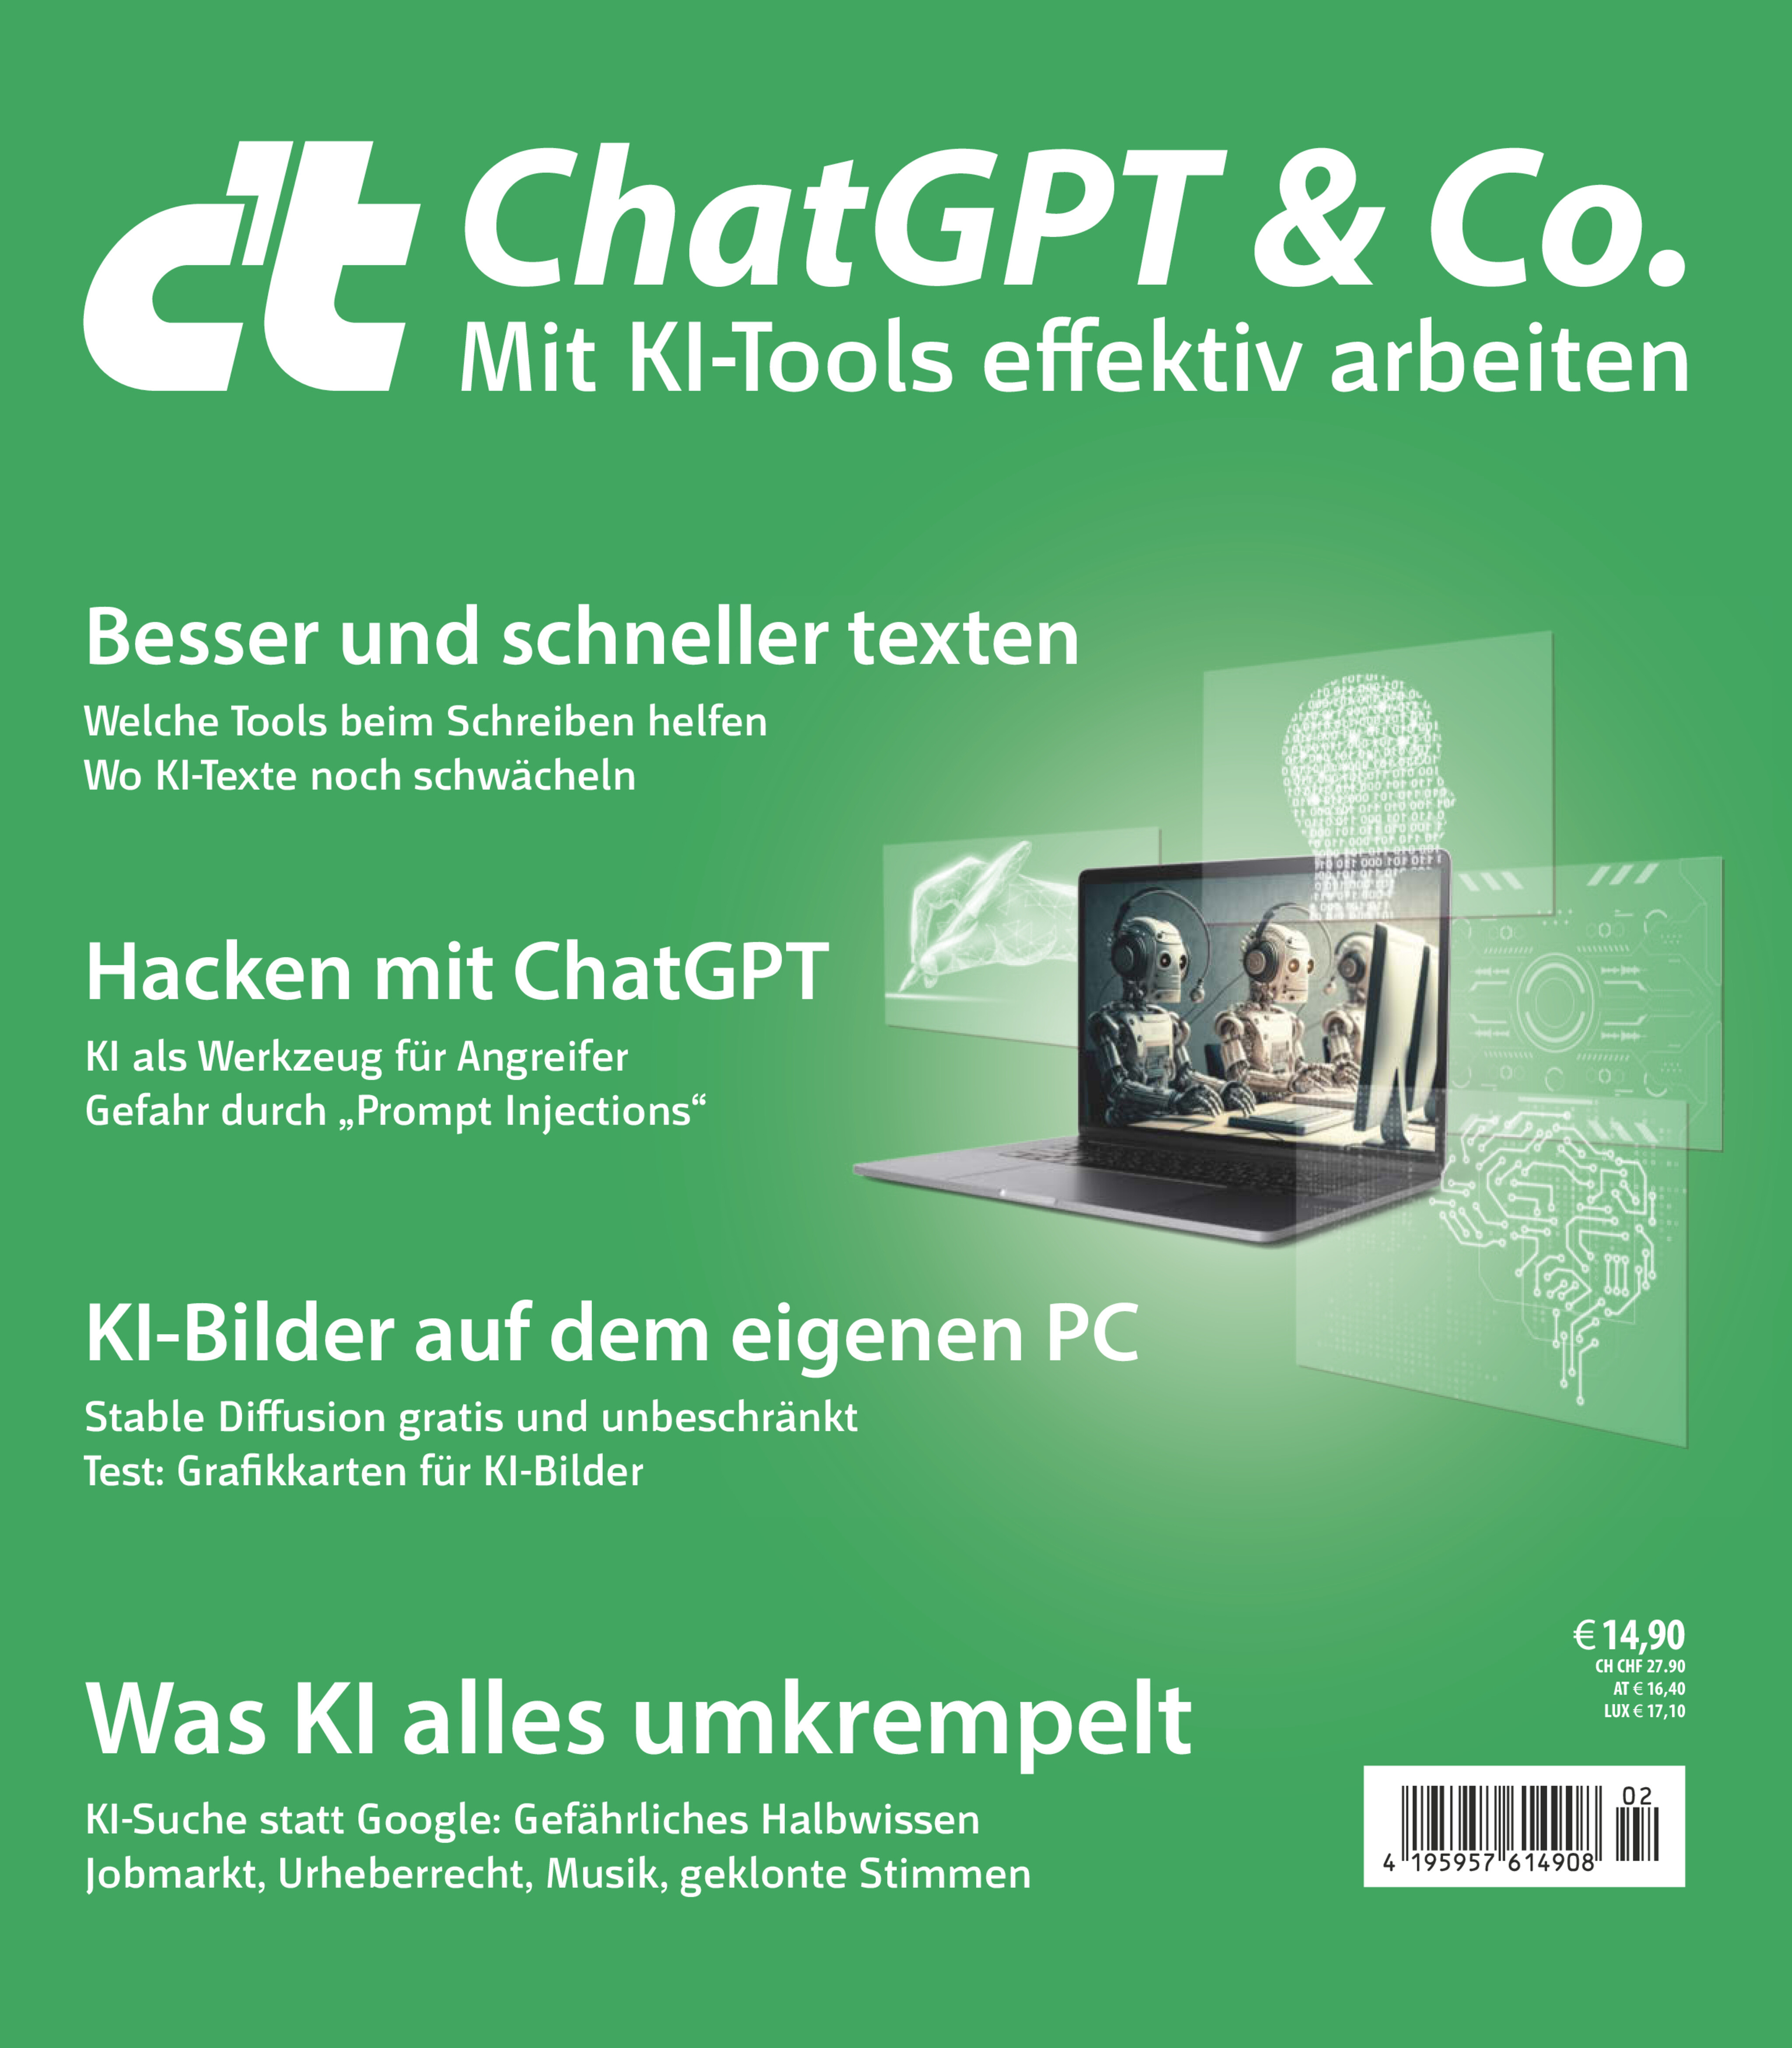 c't ChatGPT & Co.